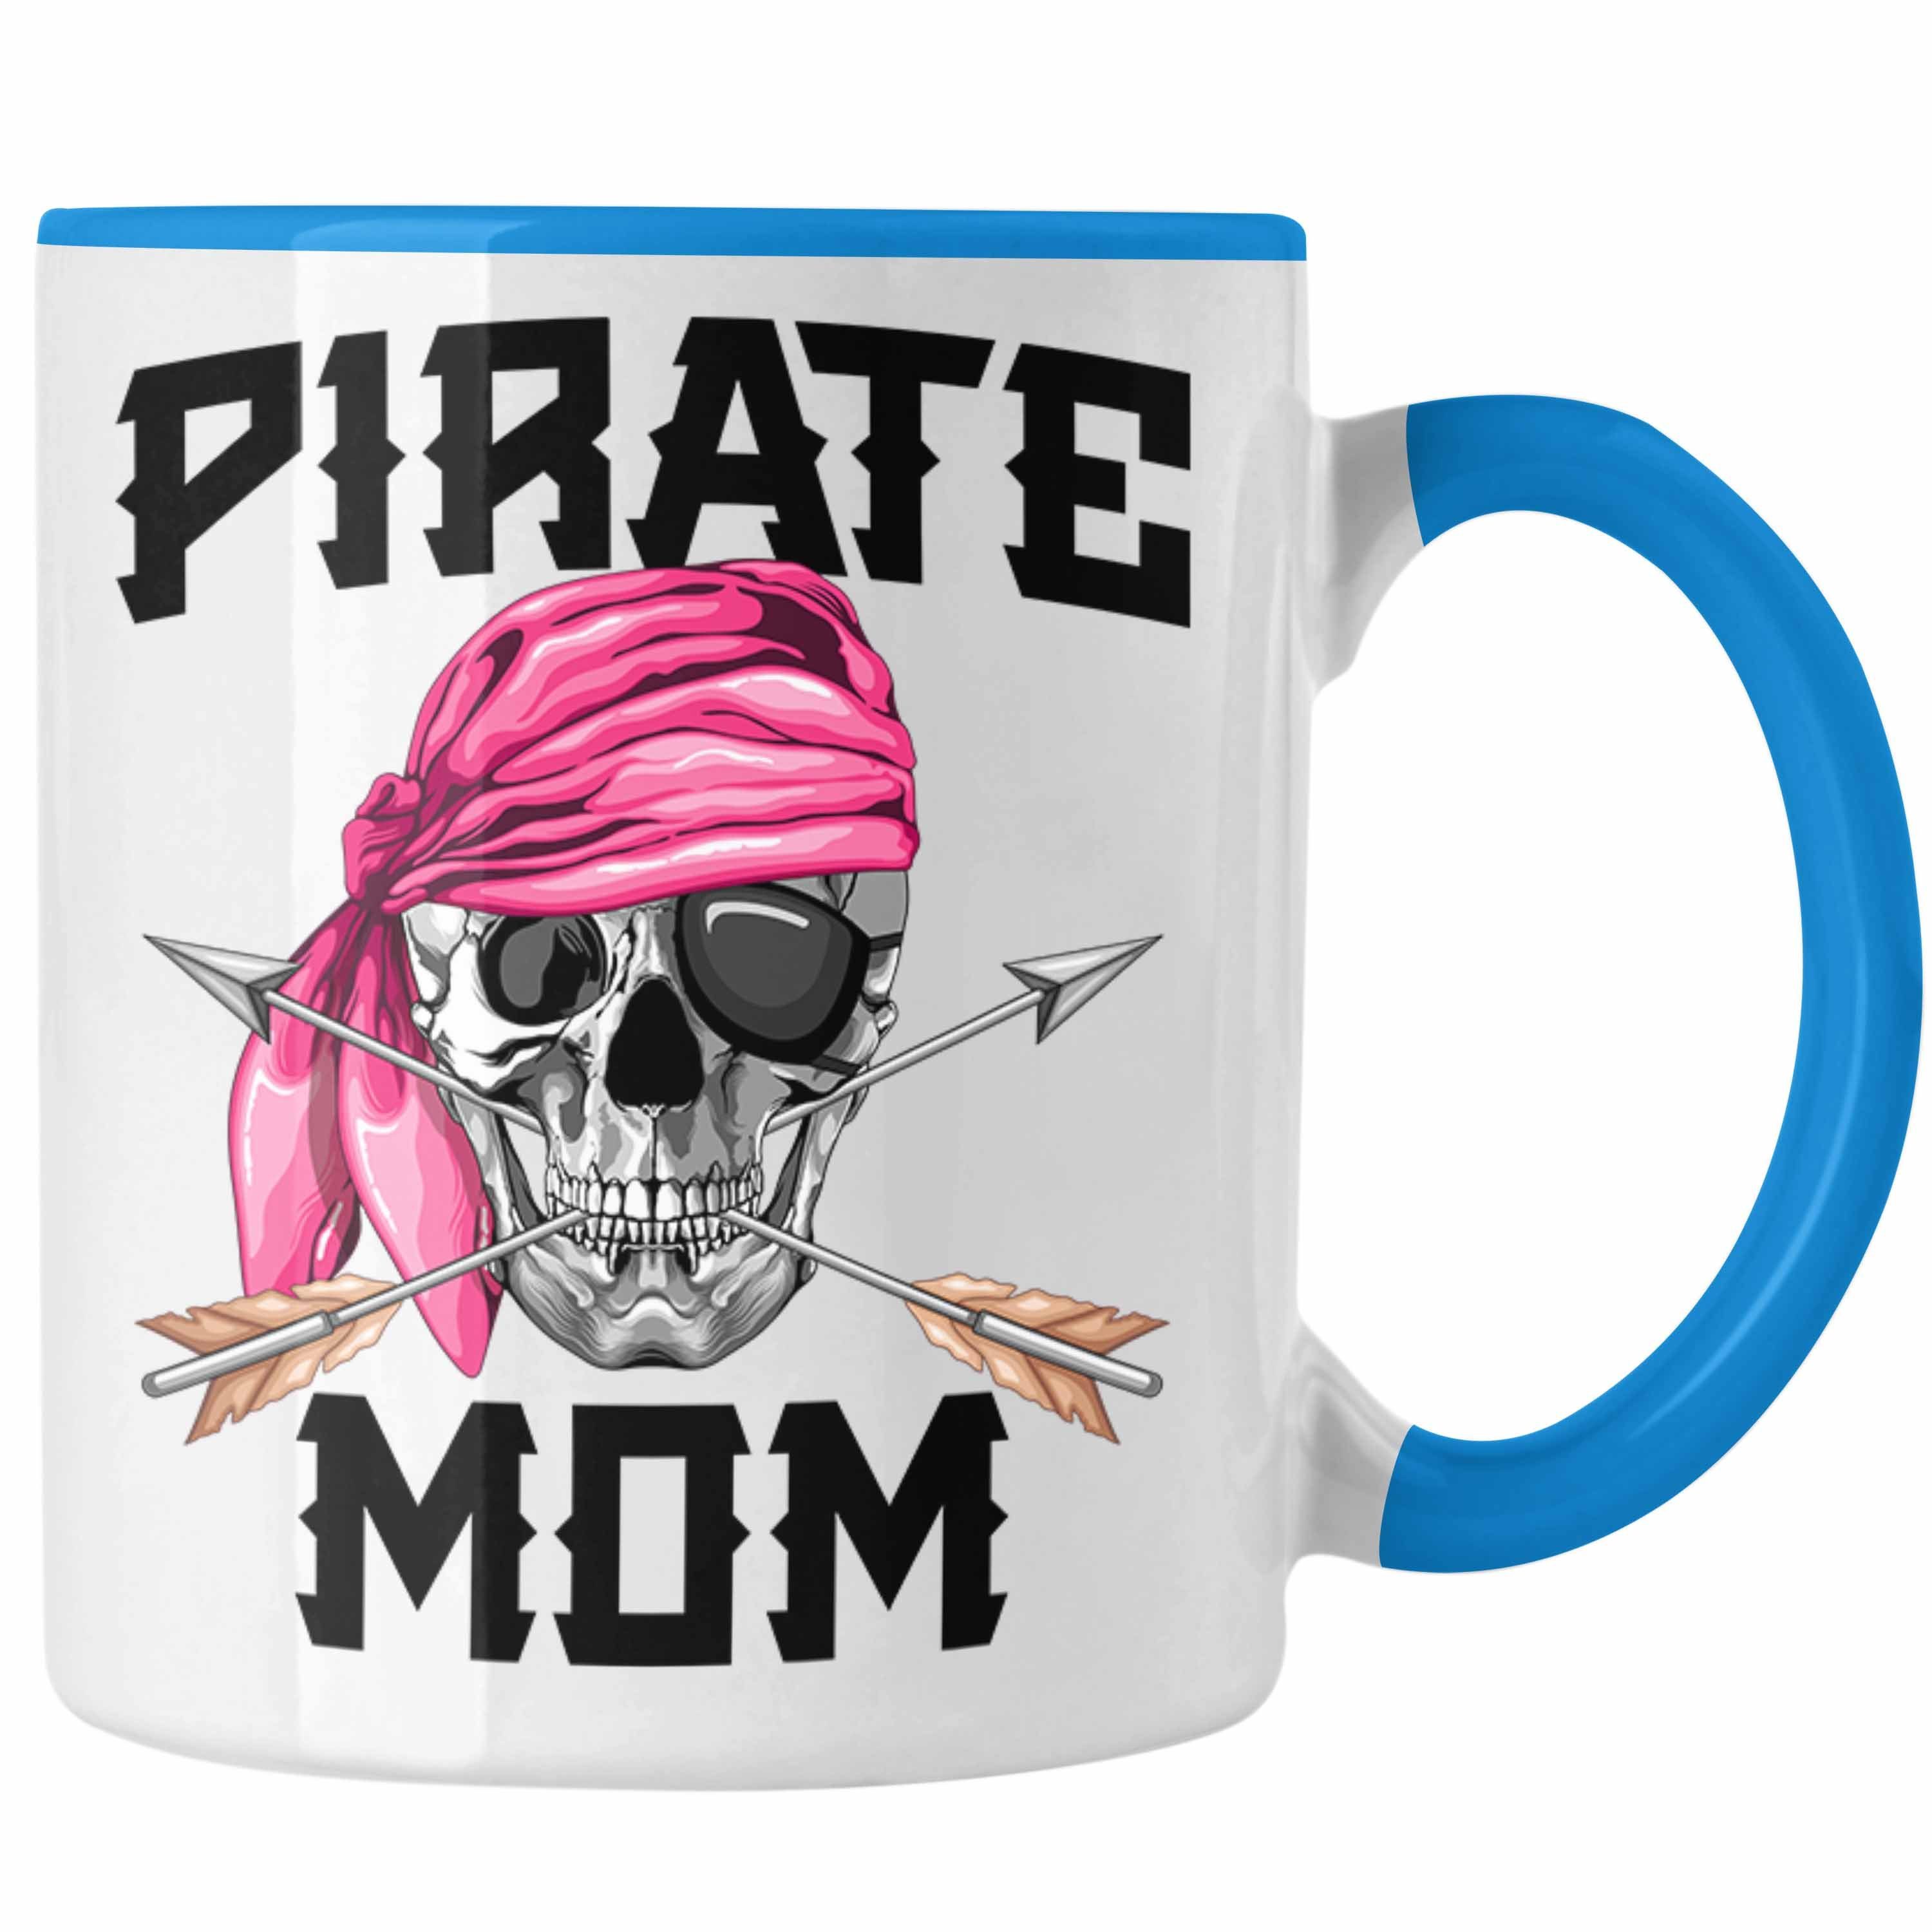 Trendation Tasse Pirate Mom Muttertag für Blau Geschenk Tasse eine Piraten Mutter